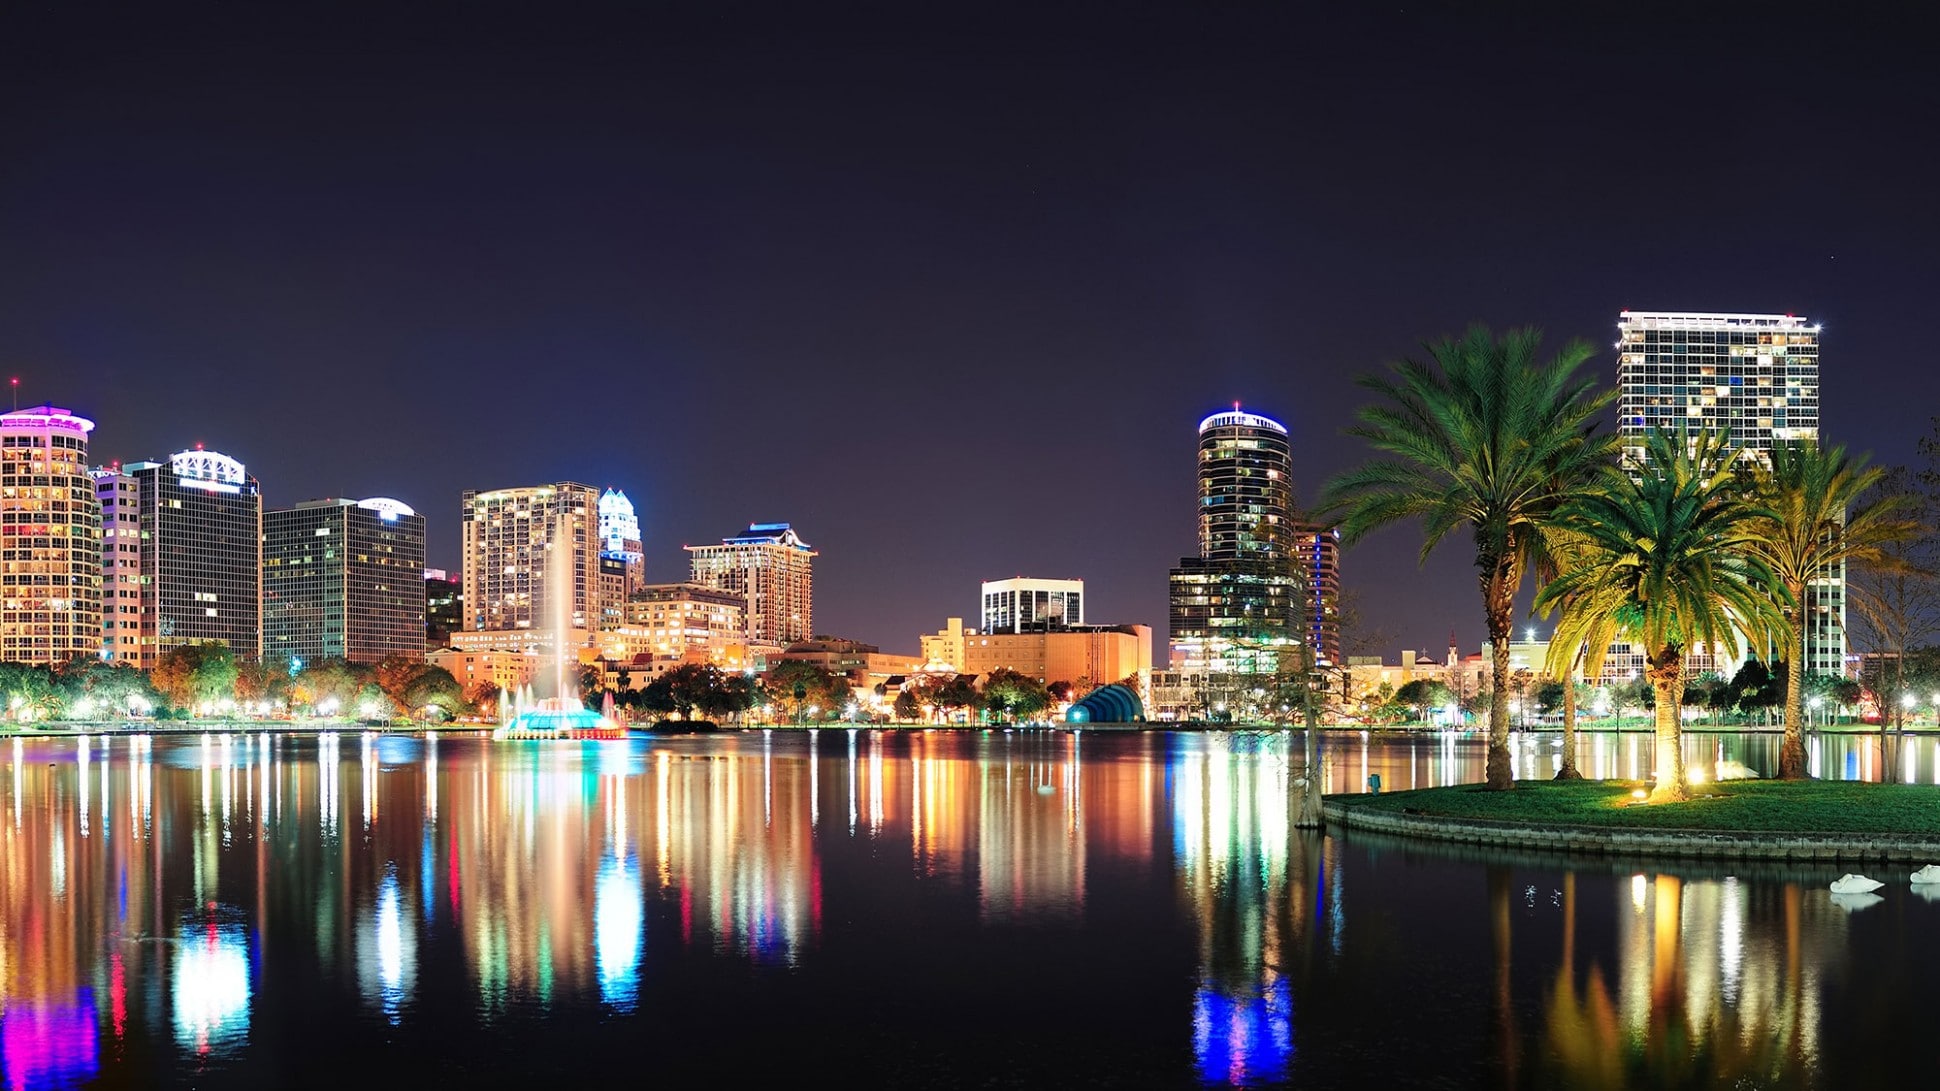 Le lac Eola de nuit, coeur du centre ville d'Orlando en Floride